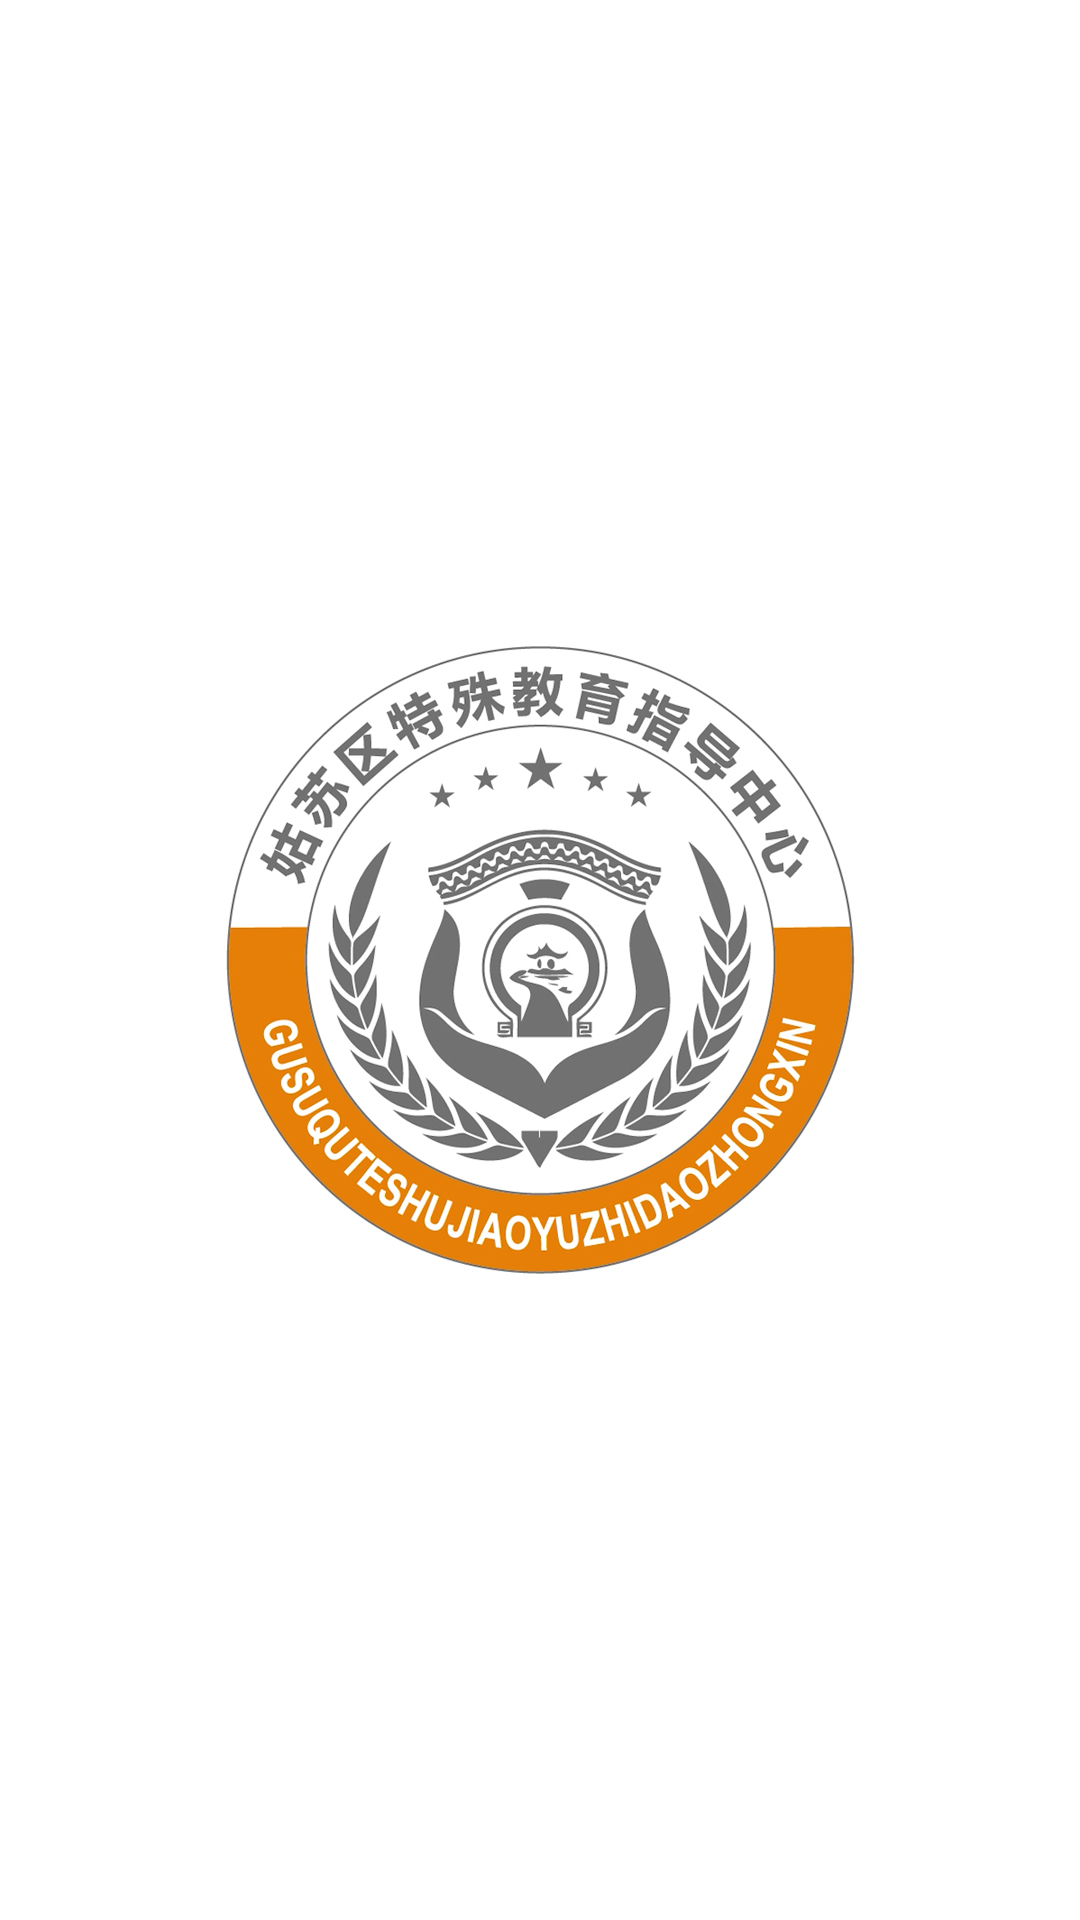 特殊教育培训机构logo设计